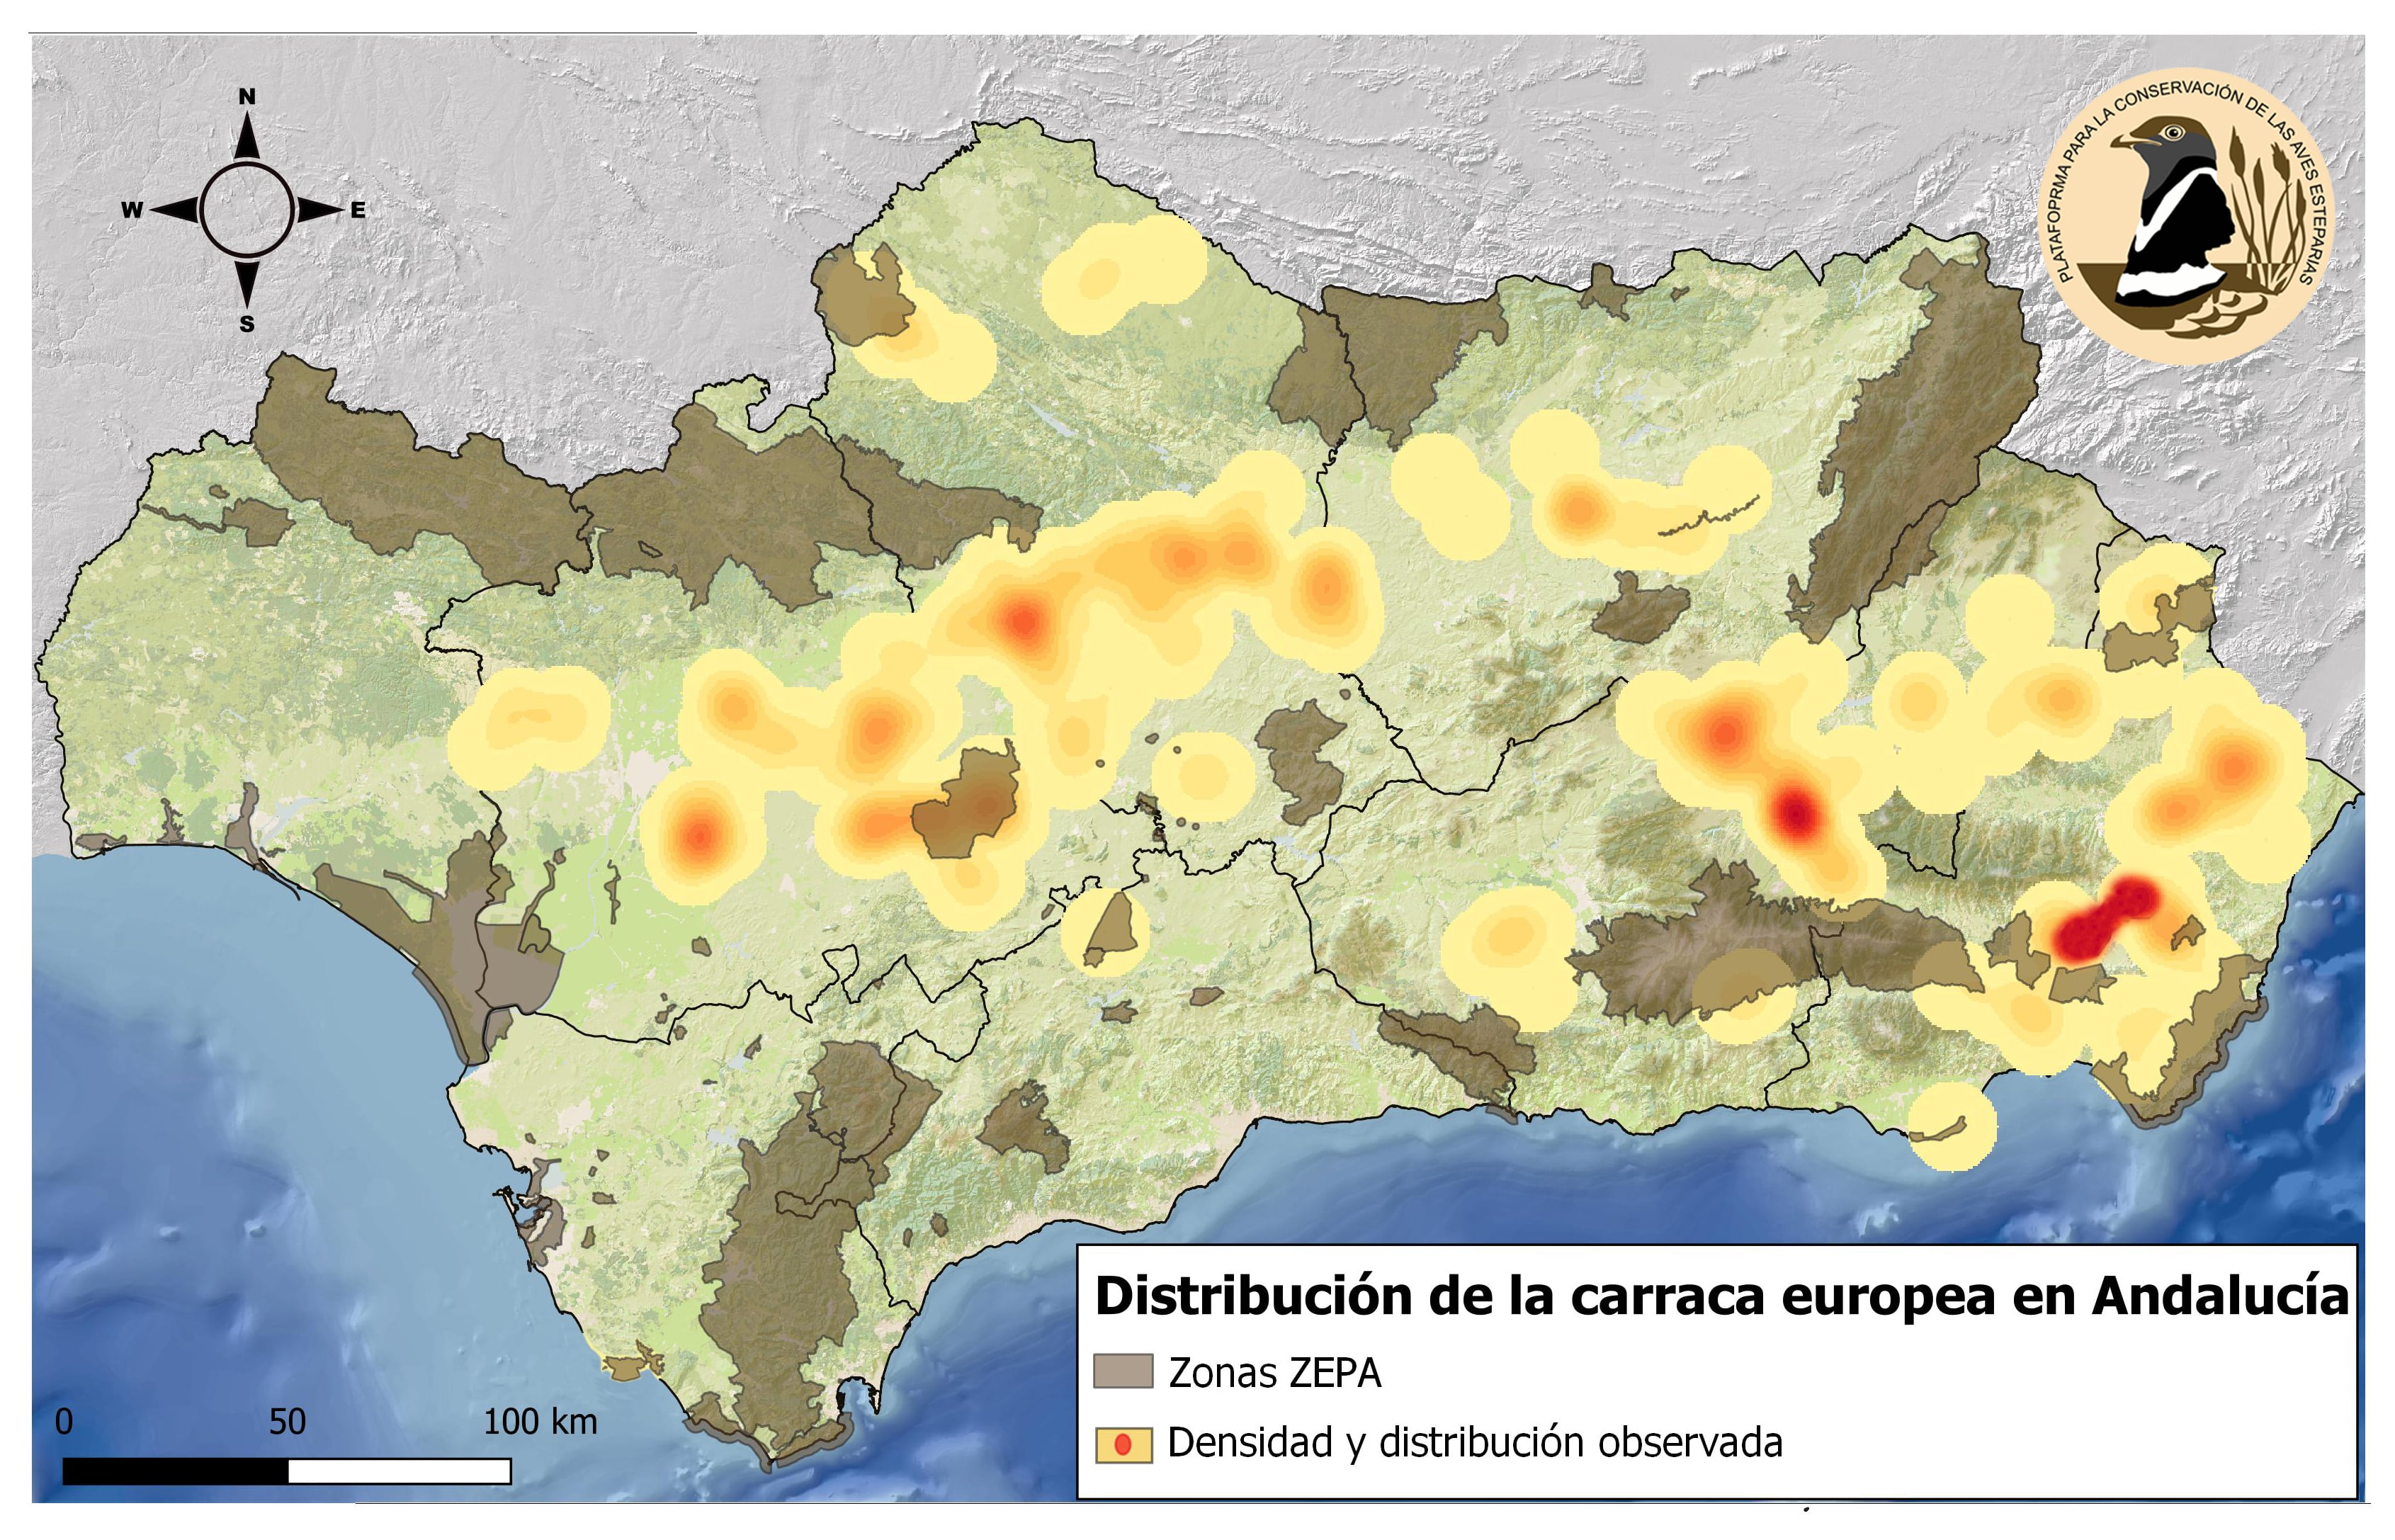 Mapa de distribución y densidad de carraca europea en Andalucía obtenido en el sondeo. Imagen: Pcaeh